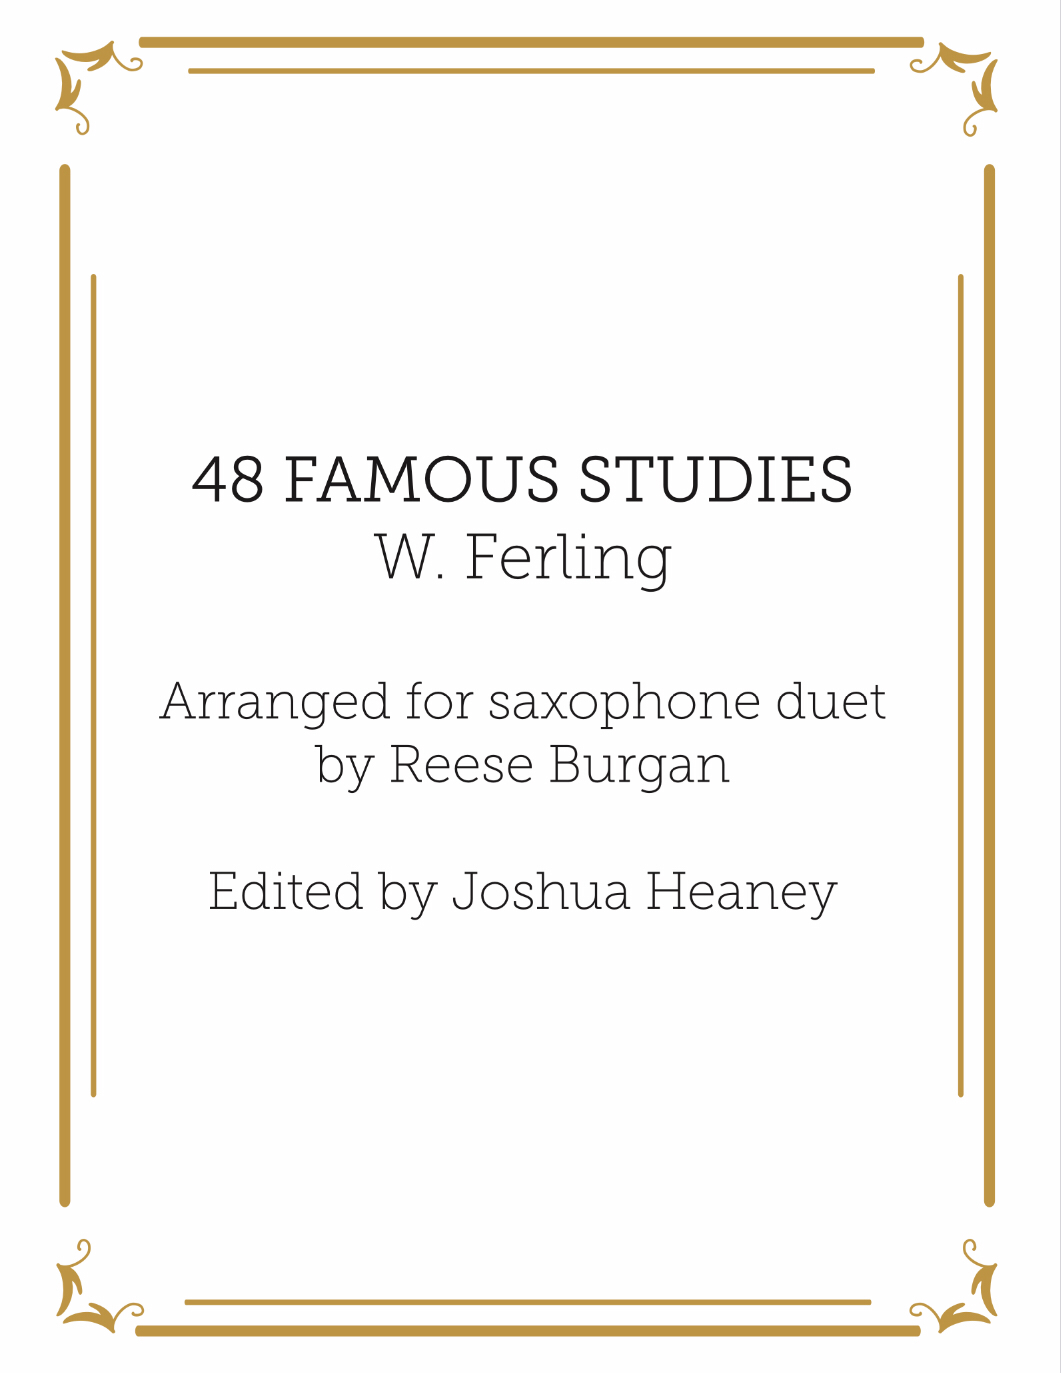 48 Famous Studies For Saxophone Duet by Ferling arr. Burgan